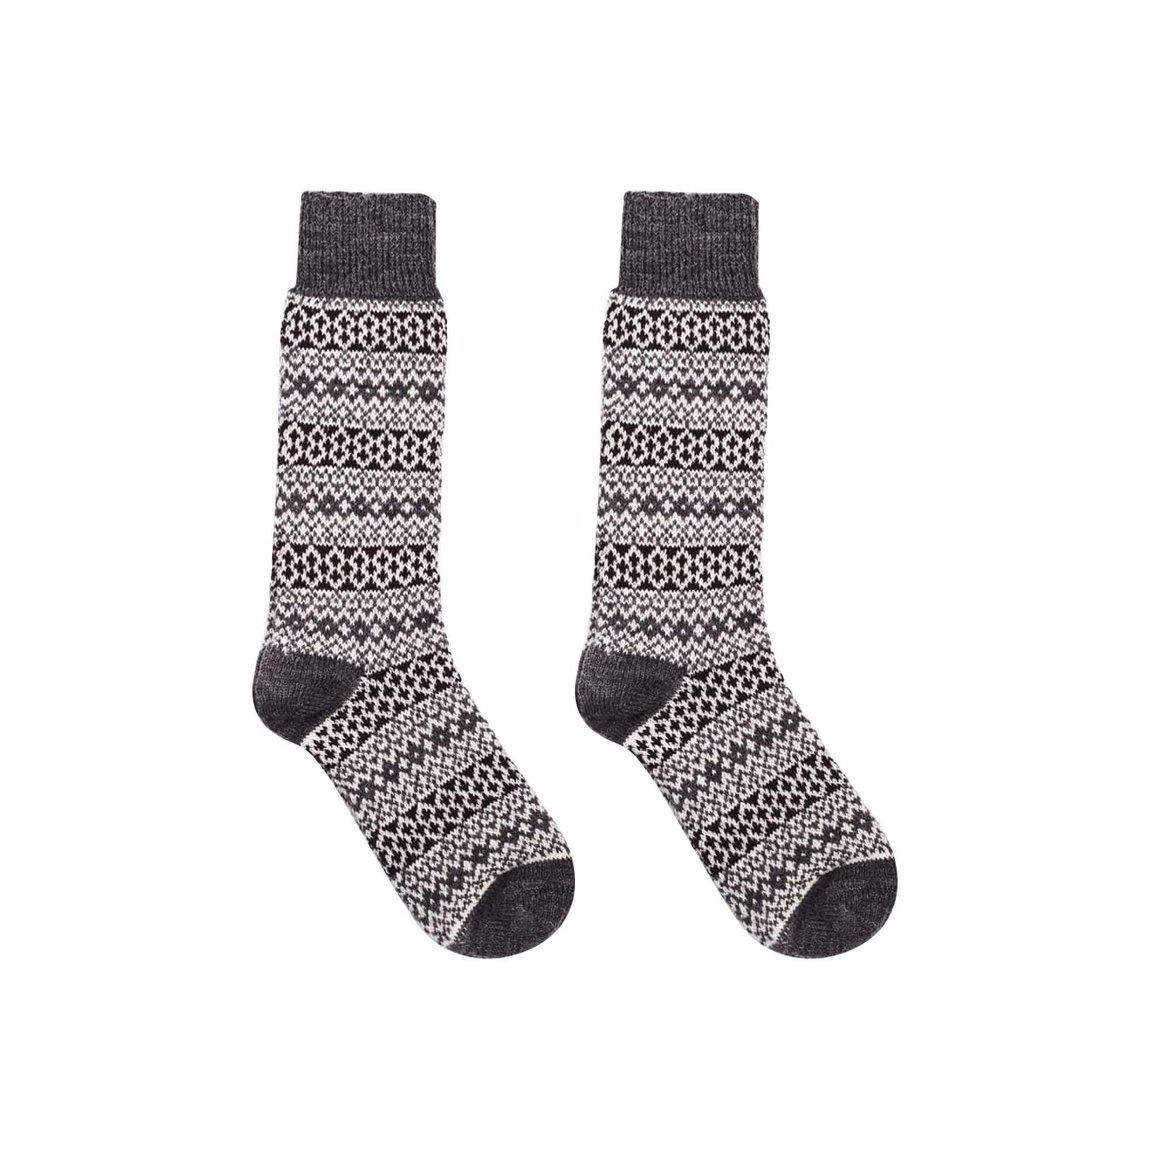 Nordic Wools Merino Torsten Socks - Charcoal - Unisex scandinavian 